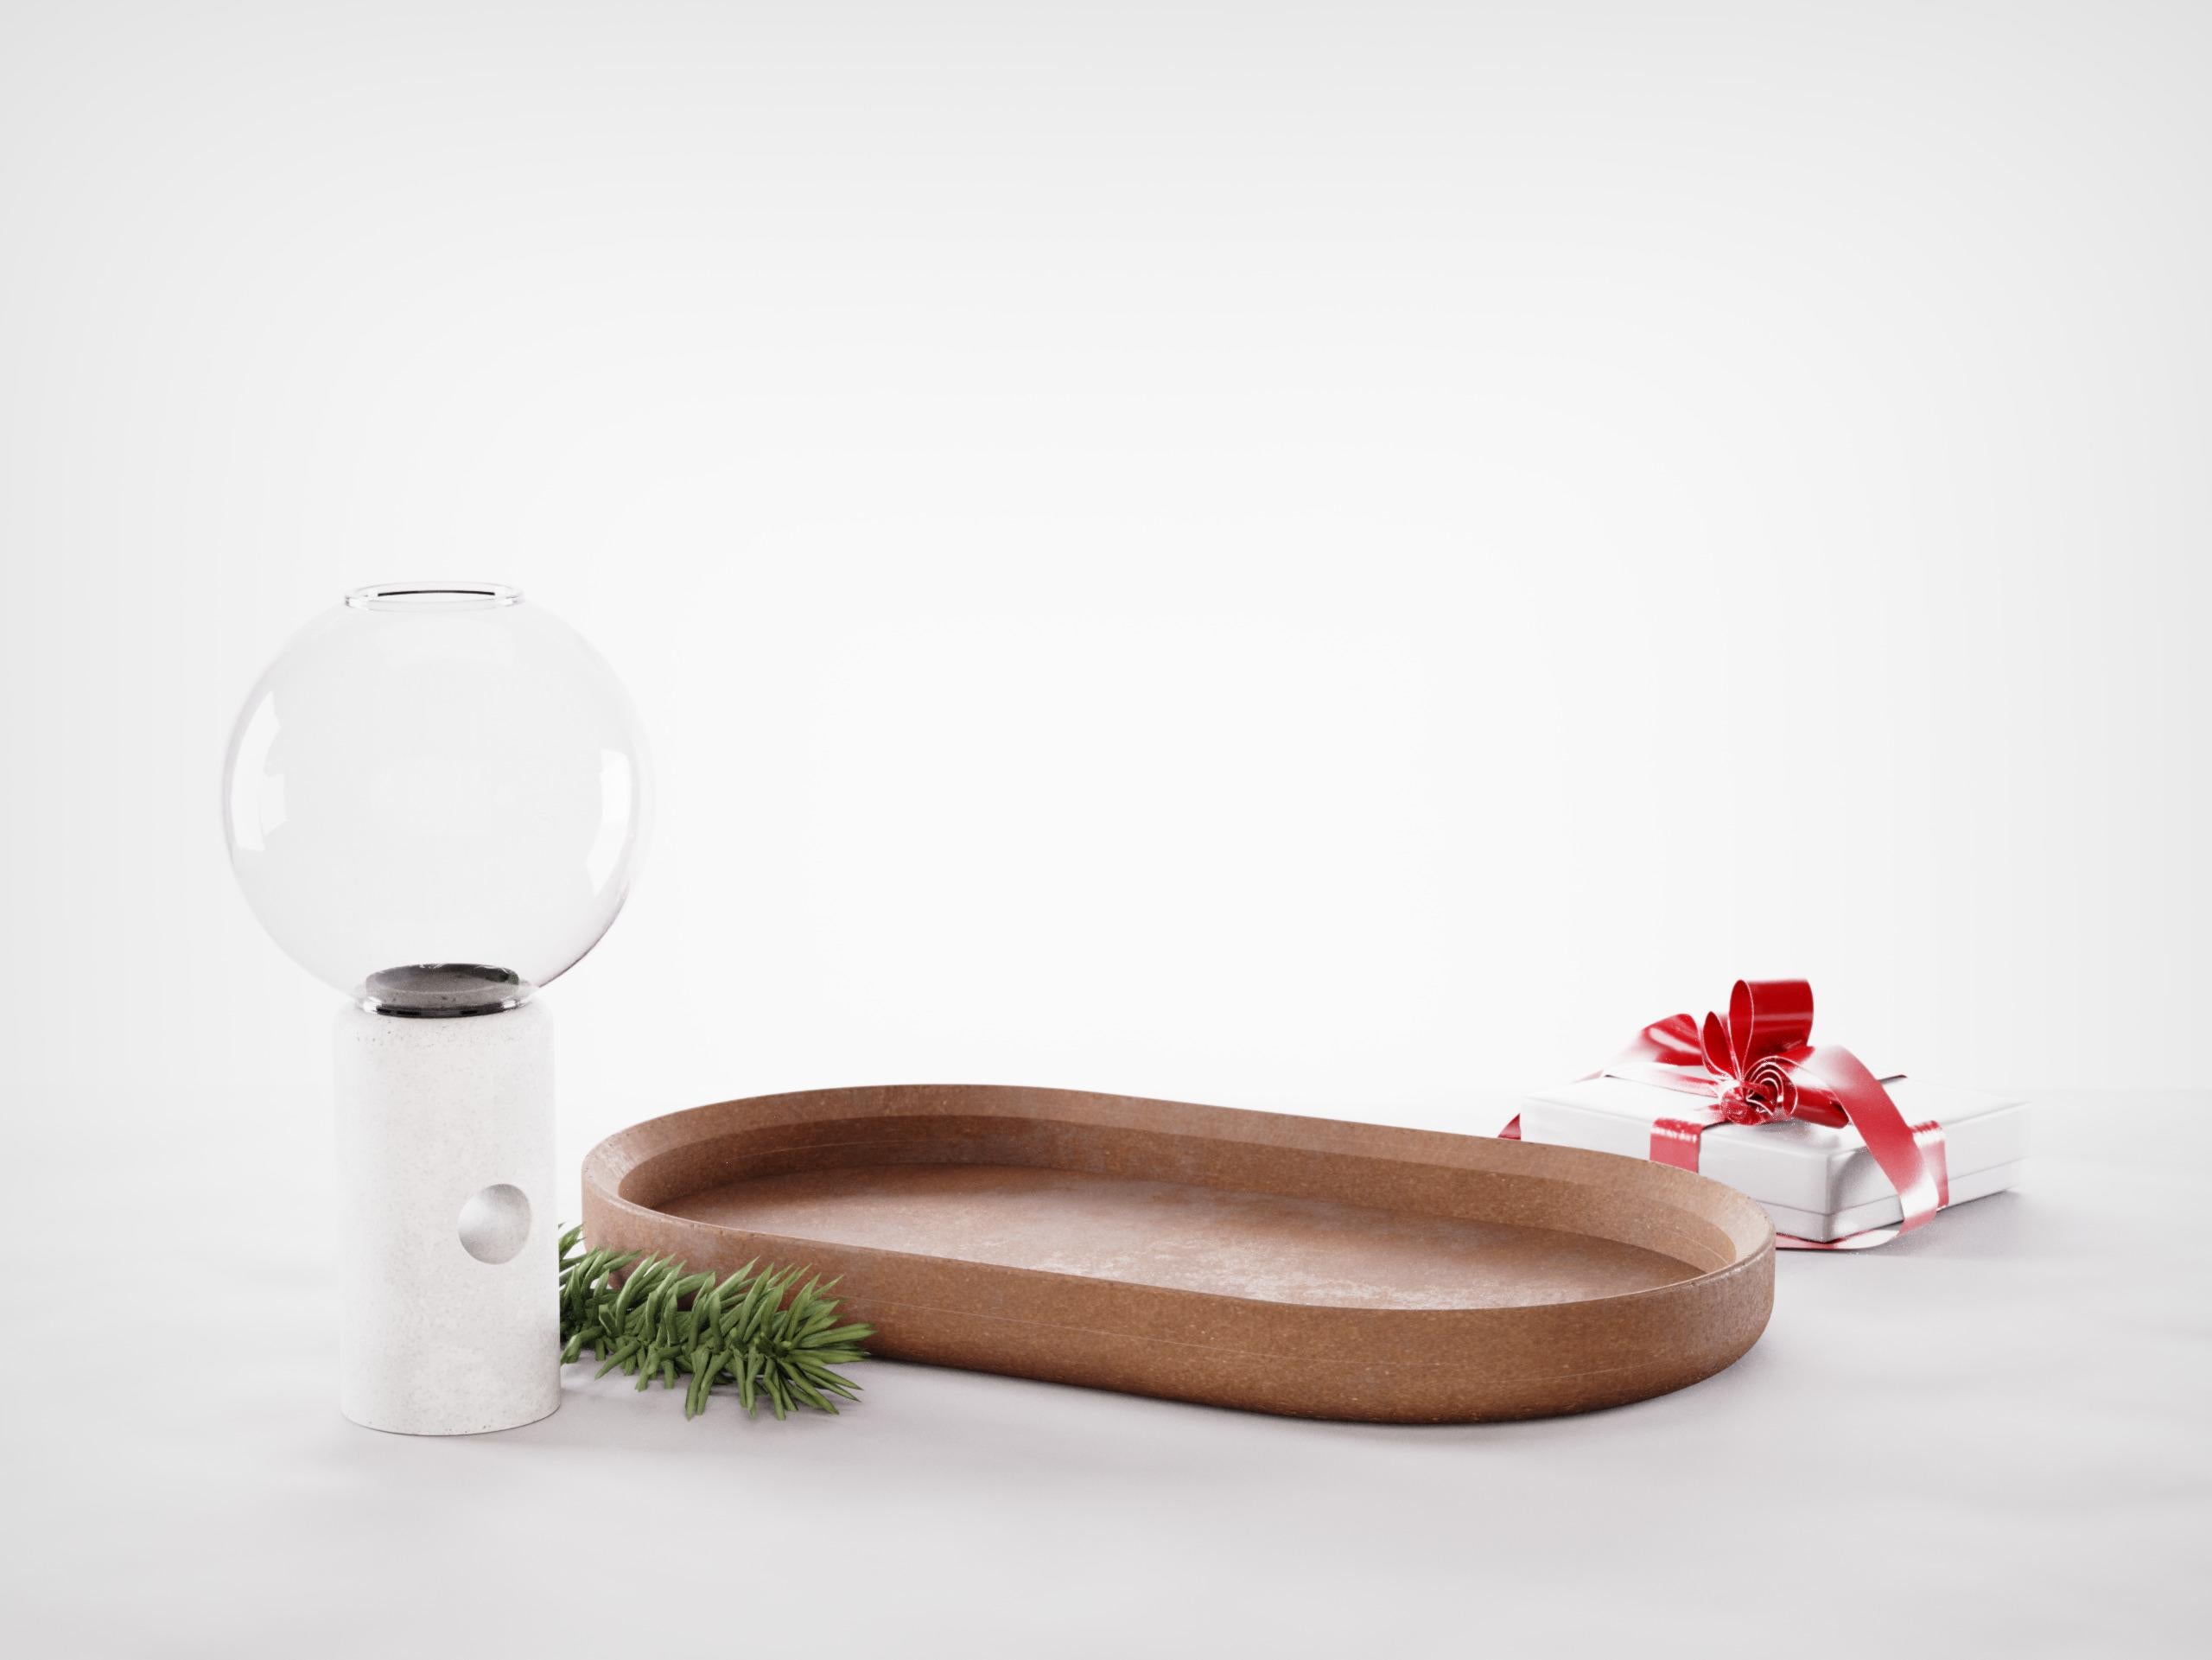 Jetzt in der Weihnachtsedition erhältlich! 
Der Kerzenhalter Efesto ist ein handwerkliches Designprodukt aus der Kollektion Betonaccessoires von Forma & Cemento. Dieser Kerzenständer ist aus Beton und geblasenem Glas gefertigt, um ein einzigartiges